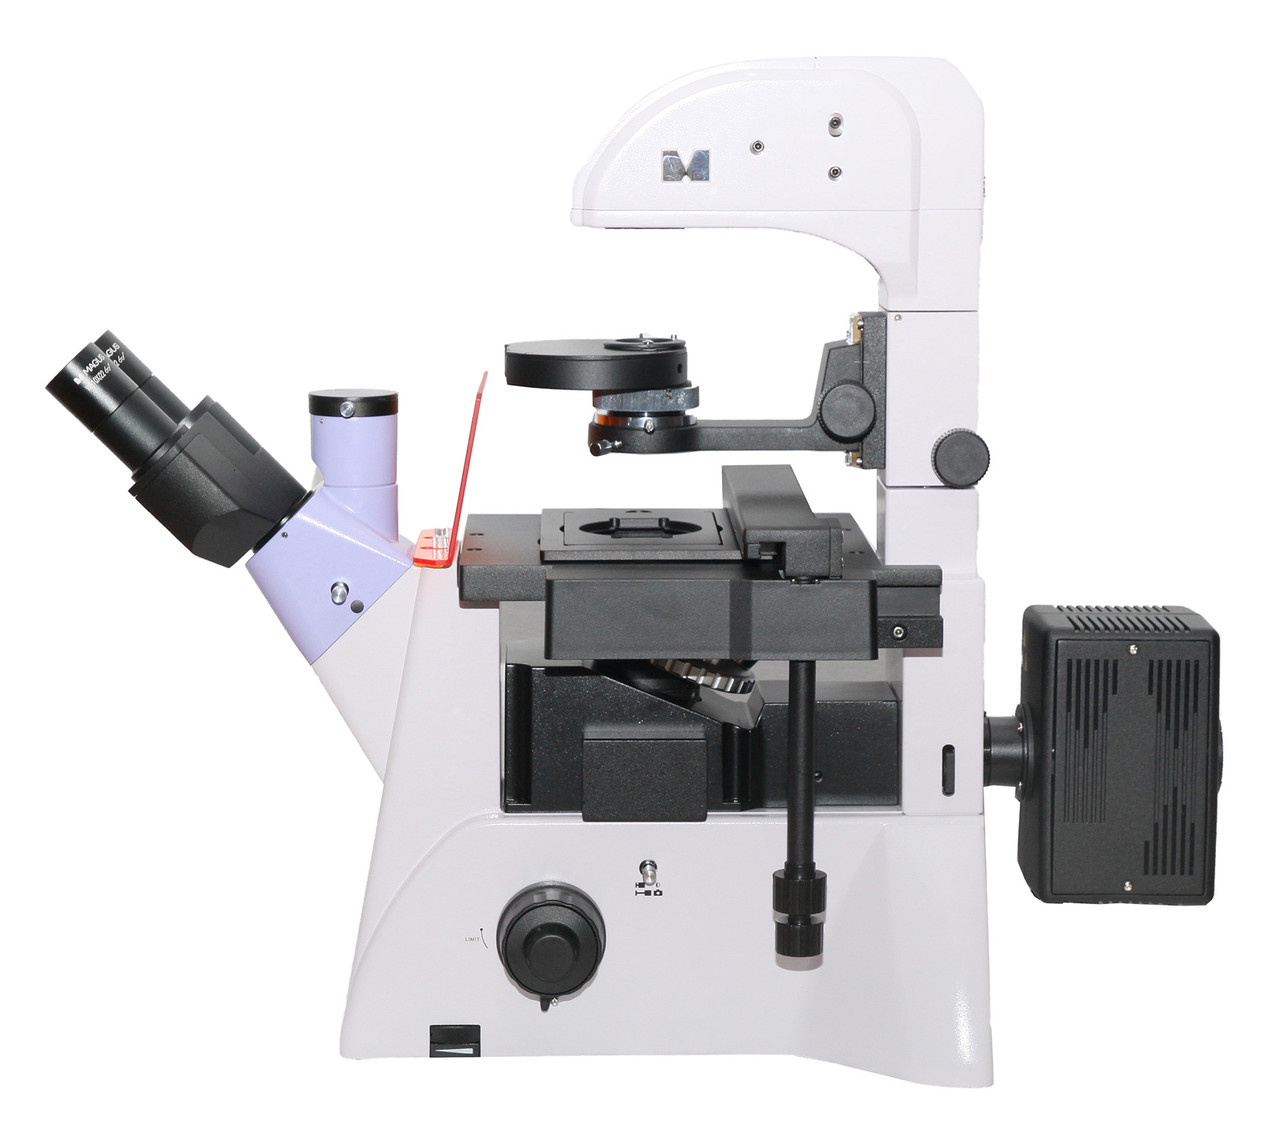 Микроскоп люминесцентный инвертированный MAGUS Lum V500